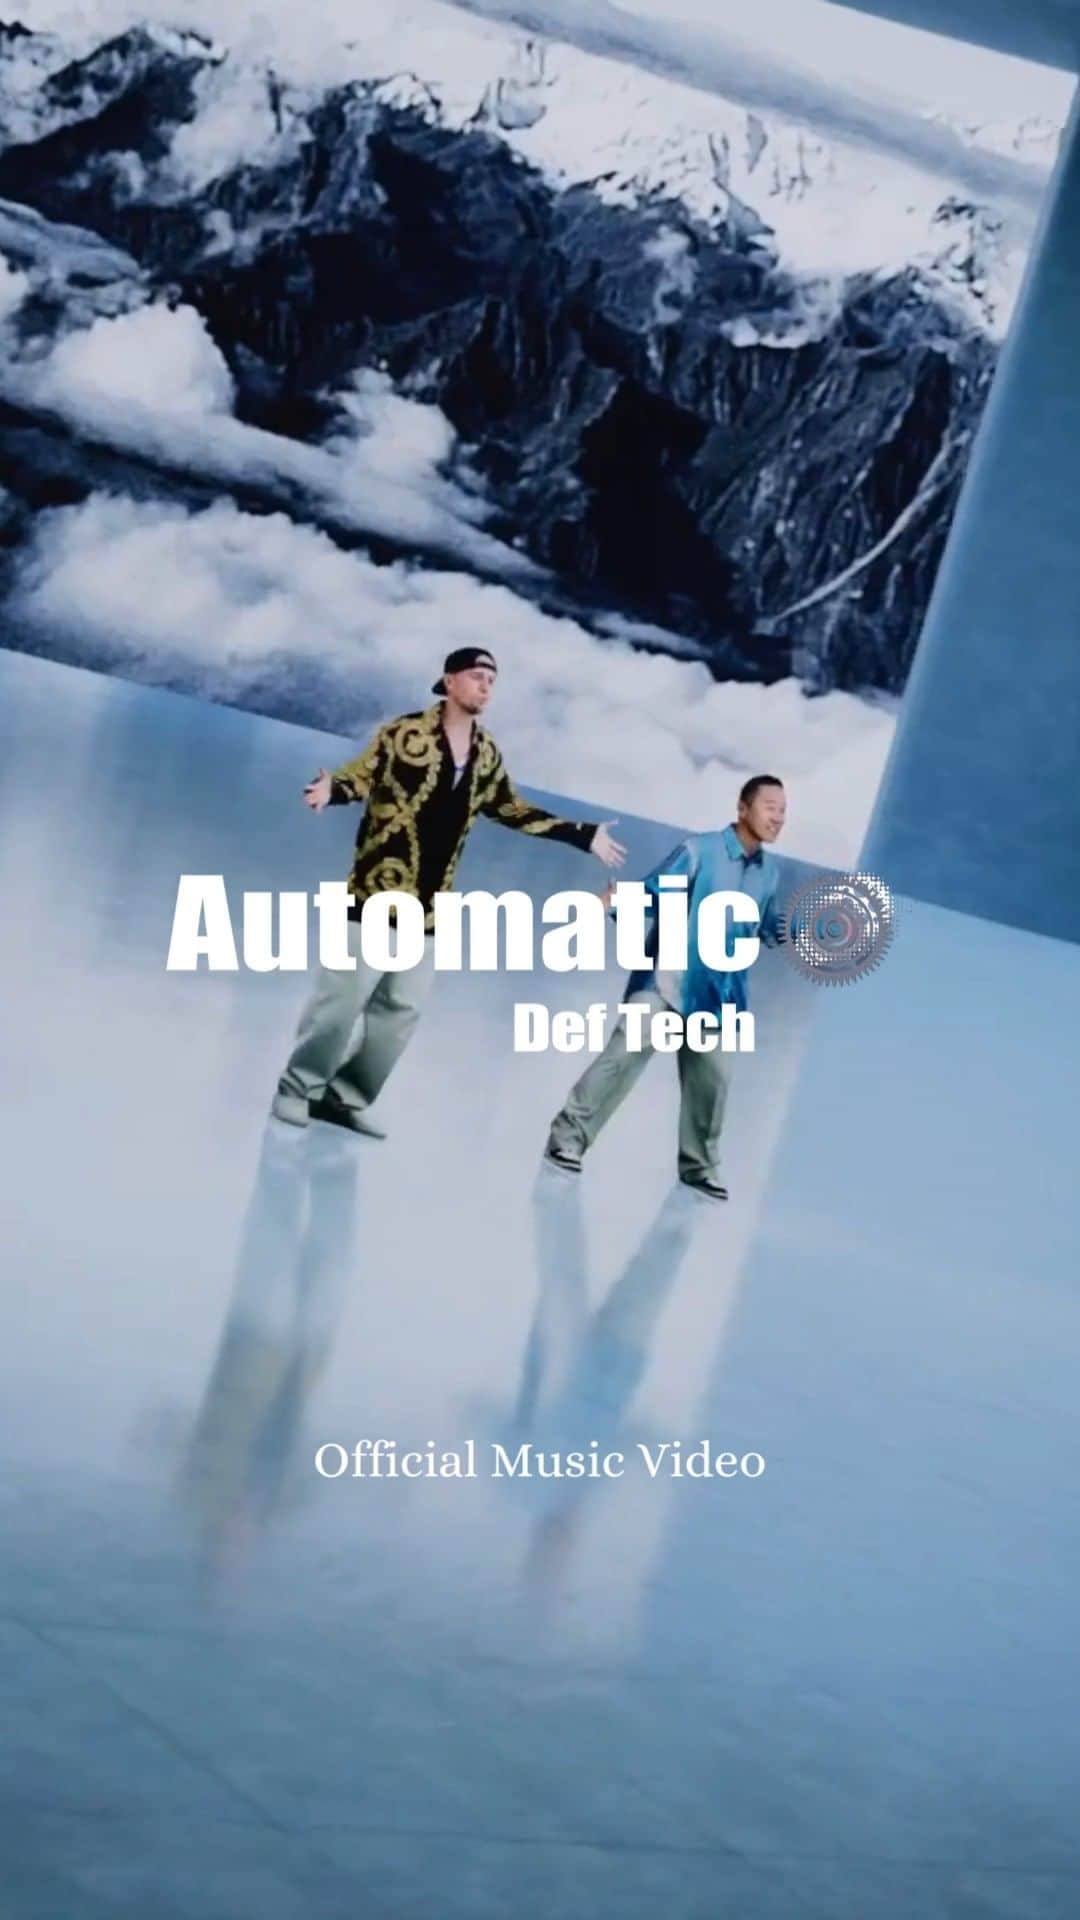 Def Techのインスタグラム：「・ ◤ "Automatic" Official Music Video ◢  2023.07.17 Release!! Digital New Single #DefTech - "Automatic" Official Music Videoが解禁！  ▼視聴はコチラ https://youtu.be/lcerToHLa3s  Def Tech、新曲を海の日に配信リリース・#OPENMIC by JIM BEAMにて #NikonCreates の最先端技術とセッションした "Automatic" MVを公開  夏を象徴するアーティスト・Def Techが、本日「海の日」にデジタルシングル「Automatic」を配信リリース！ アッパーでビートが効いたトラックに、Def Techらしい豊かなハーモニーを載せた楽曲は、「人生とはスパークするパーティーのように美しい。別れと出会いはAutomaticにやってくるが、流れに身を任せて人生を謳歌しよう」と歌っている。 少しずつ、自由を取り戻した今夏にピッタリな最高のPositive Song ♫  ミュージックビデオは“「仲間との 心躍る セッションを」をコンセプトとする、YouTube音楽チャンネル”OPEN MIC by JIM BEAMの企画になり、Nikon Createsの持つ最先端の映像技術とDef Techがセッションする内容で制作。  ニコンクリエイツ社がもつ、次世代自由視点3D映像Volumetric Capture System、高解像度のLEDウォールを使って現実を超えたシーンを視覚化できるVirtual Production、ハイスピードなカメラアングルコントロールが可能なロボットアームBOLTという最先端の技術を融合し、現実を超越した世界の中でDef Techとダンサーが躍動するミュージックビデオは必見！  ＝＝＝＝＝ ▼Def Tech https://deftech.jp/  ▼OPEN MIC by JIM BEAM https://youtube.com/@OPENMICbyJIMBEAM  ▼NikonCreates https://www.creates.nikon.com/  ＝＝＝＝＝ Digital New Single “Automatic” 2023.07.17 Release!! ▼"Automatic" Streaming & Download  ↓tuneCORE https://linkco.re/cGzrXtnf  ↓Apple Music https://music.apple.com/jp/album/automatic-single/1694851291  待望の新曲が 7/17 海の日にリリース！ “Letting go go crazy” 理由なんていらない もっと自由になって、もっとクレイジーになって人生を楽しもう！ 夏にピッタリな最高の Positive Song!!  Song｜Automatic By @deftech @shen037 @microfromdeftech   Dancer｜ MASA a.k.a KROW @krowmasa  中嶋 美虹 @miko_nakajima   #DefTech #Shen #Micro #NikonCreates #OPENMIC  ＝＝＝＝＝ Def Tech 秋の全国5都市ワンマンツアー The Sound Waves Tour 2023 ★チケット一般発売開始！！  Shen & Micro が奏でるハーモニーを体感して心揺さぶる音楽の波に包まれよう！  ▼開催日程 9/15 愛知 日本特殊陶業市民会館 9/17 千葉 市川市文化会館 9/28 東京 TOKYO DOME CITY HALL 9/29 大阪 オリックス劇場 10/1 福岡 福岡国際会議場  ★ チケット一般発売開始！ ▼ お申し込みはコチラ（ローソンチケット） http://l-tike.com/deftech/  ▼ お申し込みはコチラ（イープラス） https://eplus.jp/sf/word/0000003631  ▼ お申し込みはコチラ（チケットぴあ） https://t.pia.jp/pia/artist/artists.d...  受付日程 / 2023/7/1(土) 10:00 ～ 2023/8/29(火) 22:00 まで 枚数制限 / 4枚まで 年齢制限 / 5歳以上チケット必要」